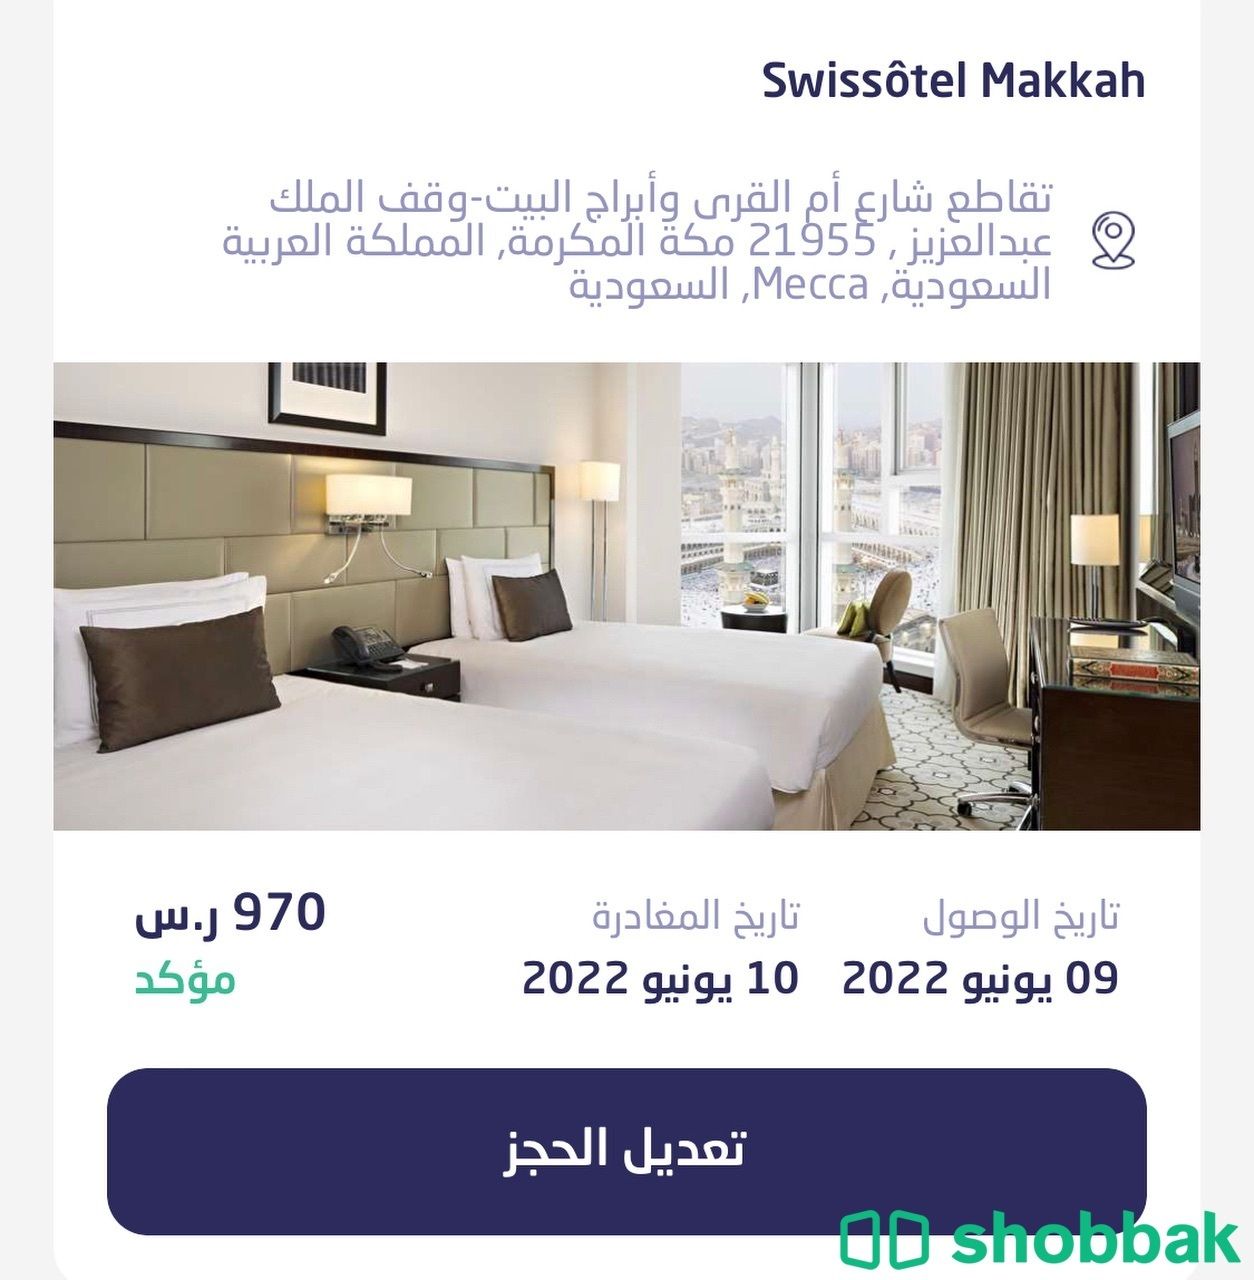 غرفتين فندق سويس اوتيل مكه  شباك السعودية